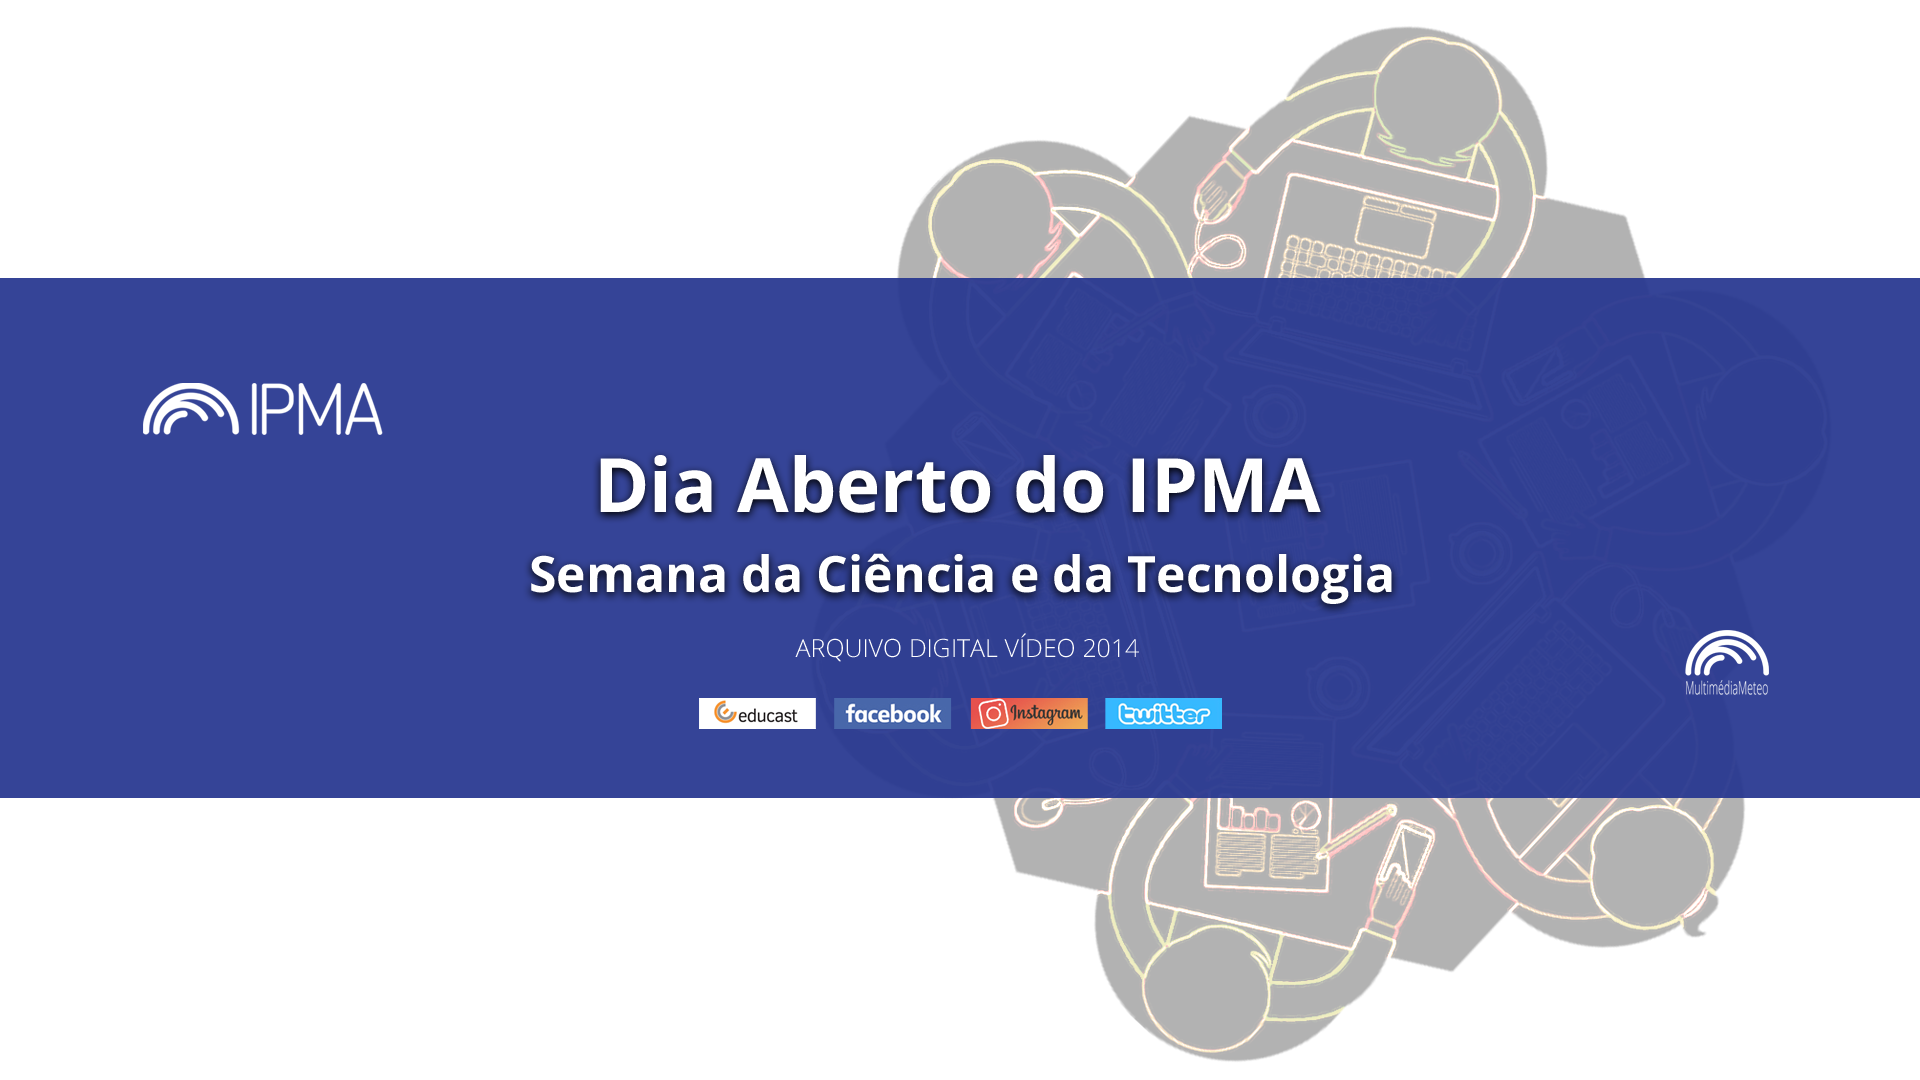  Dia Aberto do IPMA 2014